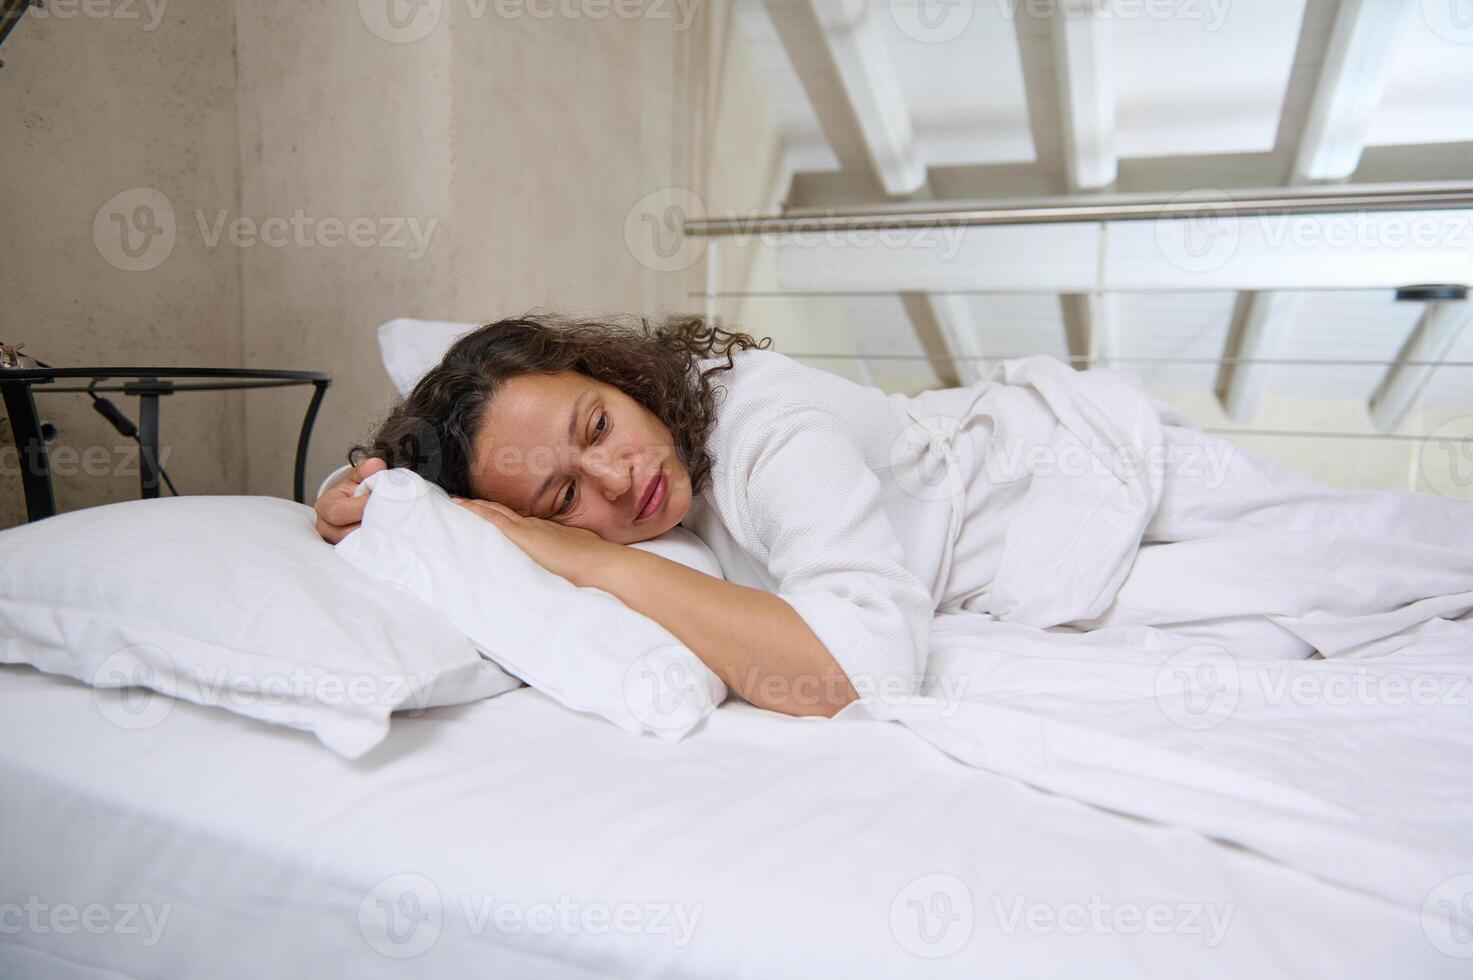 estresado medio Envejecido mujer acostado en cama a hogar y llanto. frustrado hembra sensación solitario foto